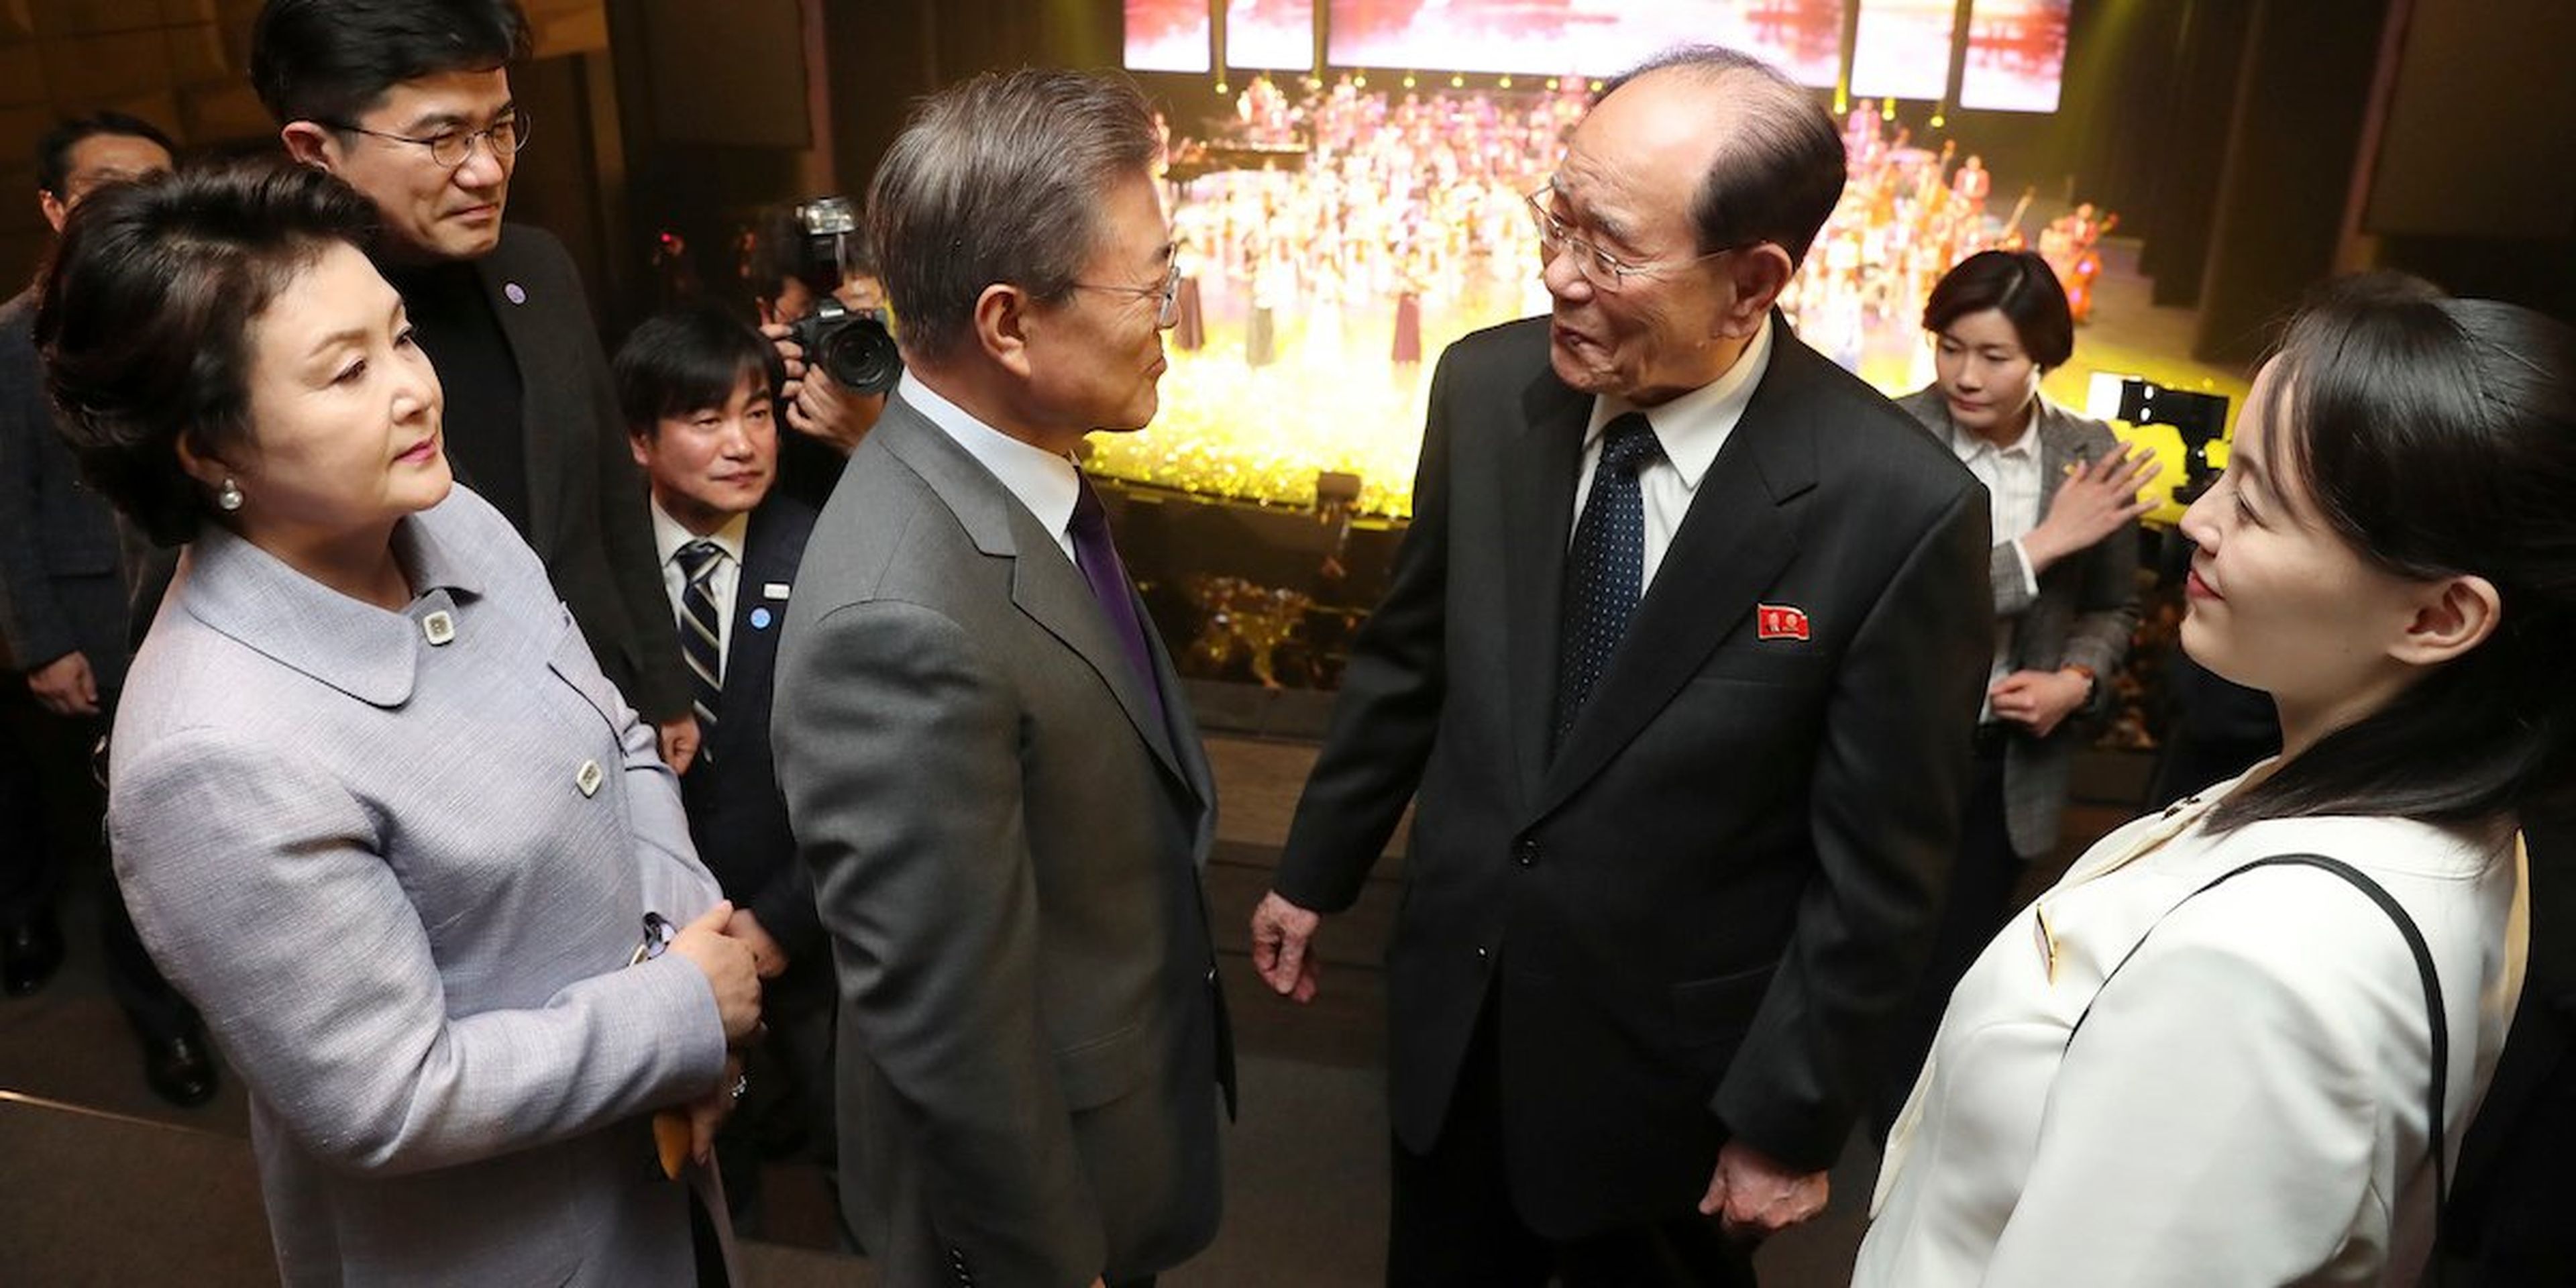 El presidente surcoreano Moon Jae-in –situado en el centro– conversa con el presidente honorífico de Corea del Norte, Kim Yong Nam, y la hermana del líder del país, Kim Yo Jong (situada a la derecha).